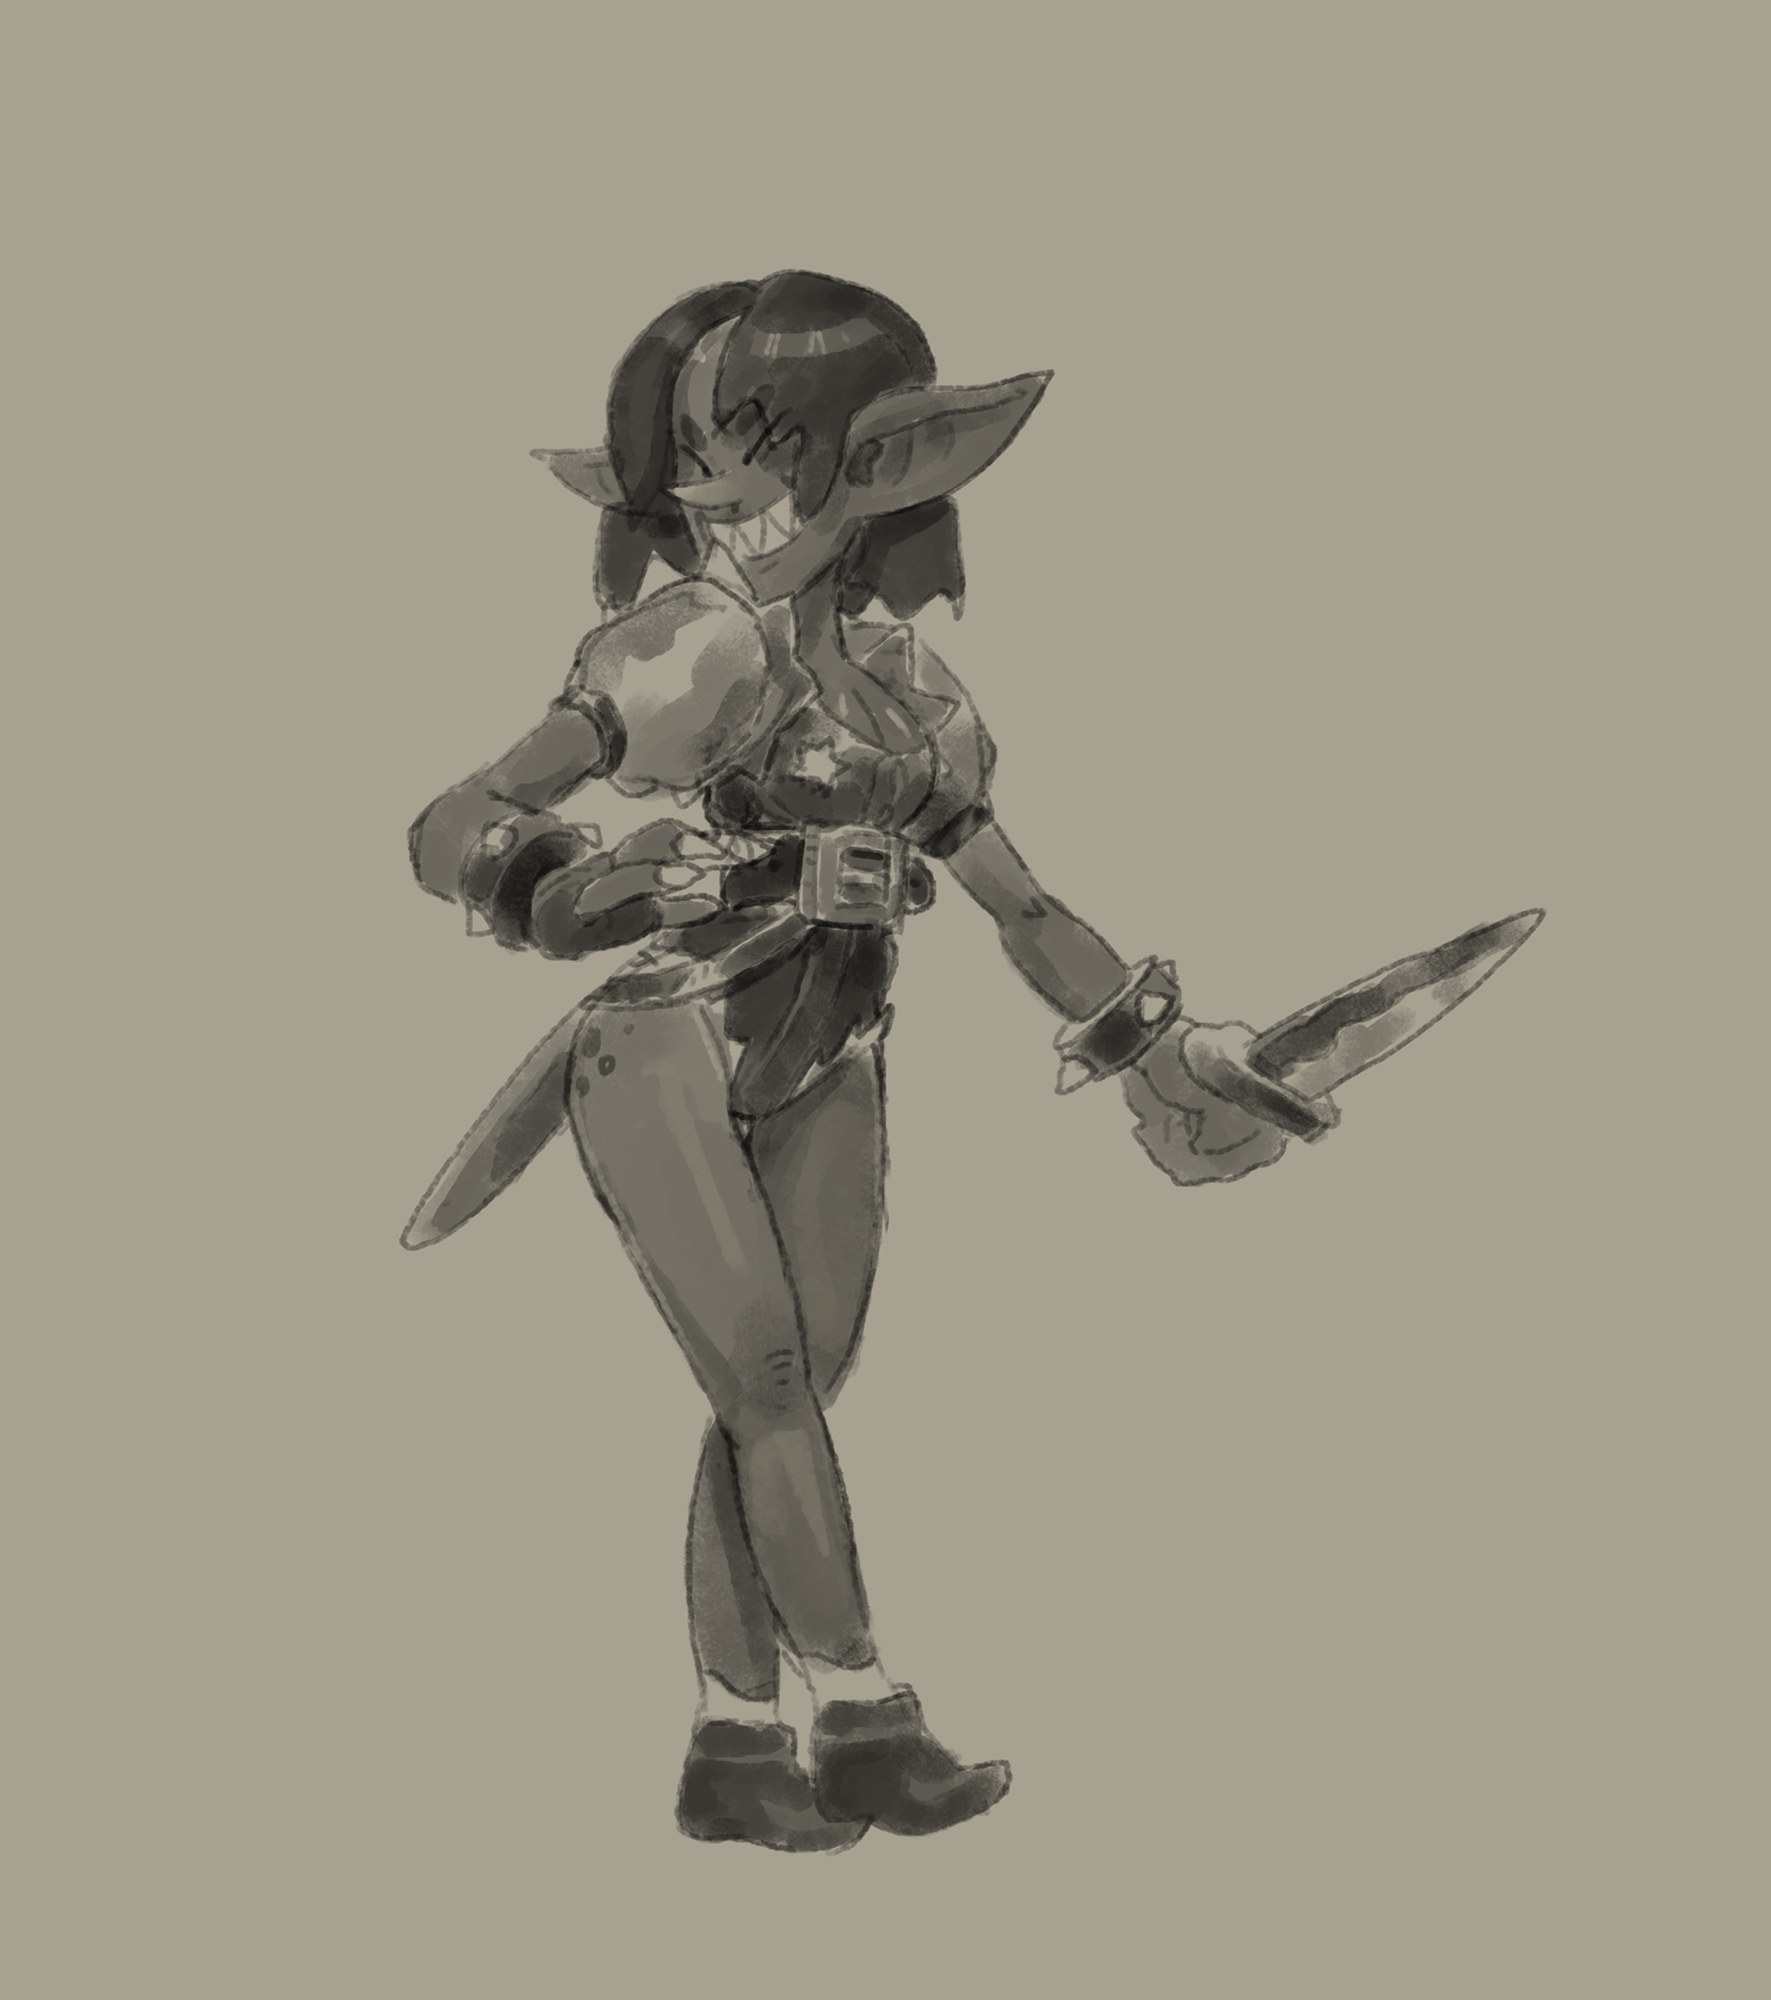 black and white sketch of smiling goblin girl holding dagger